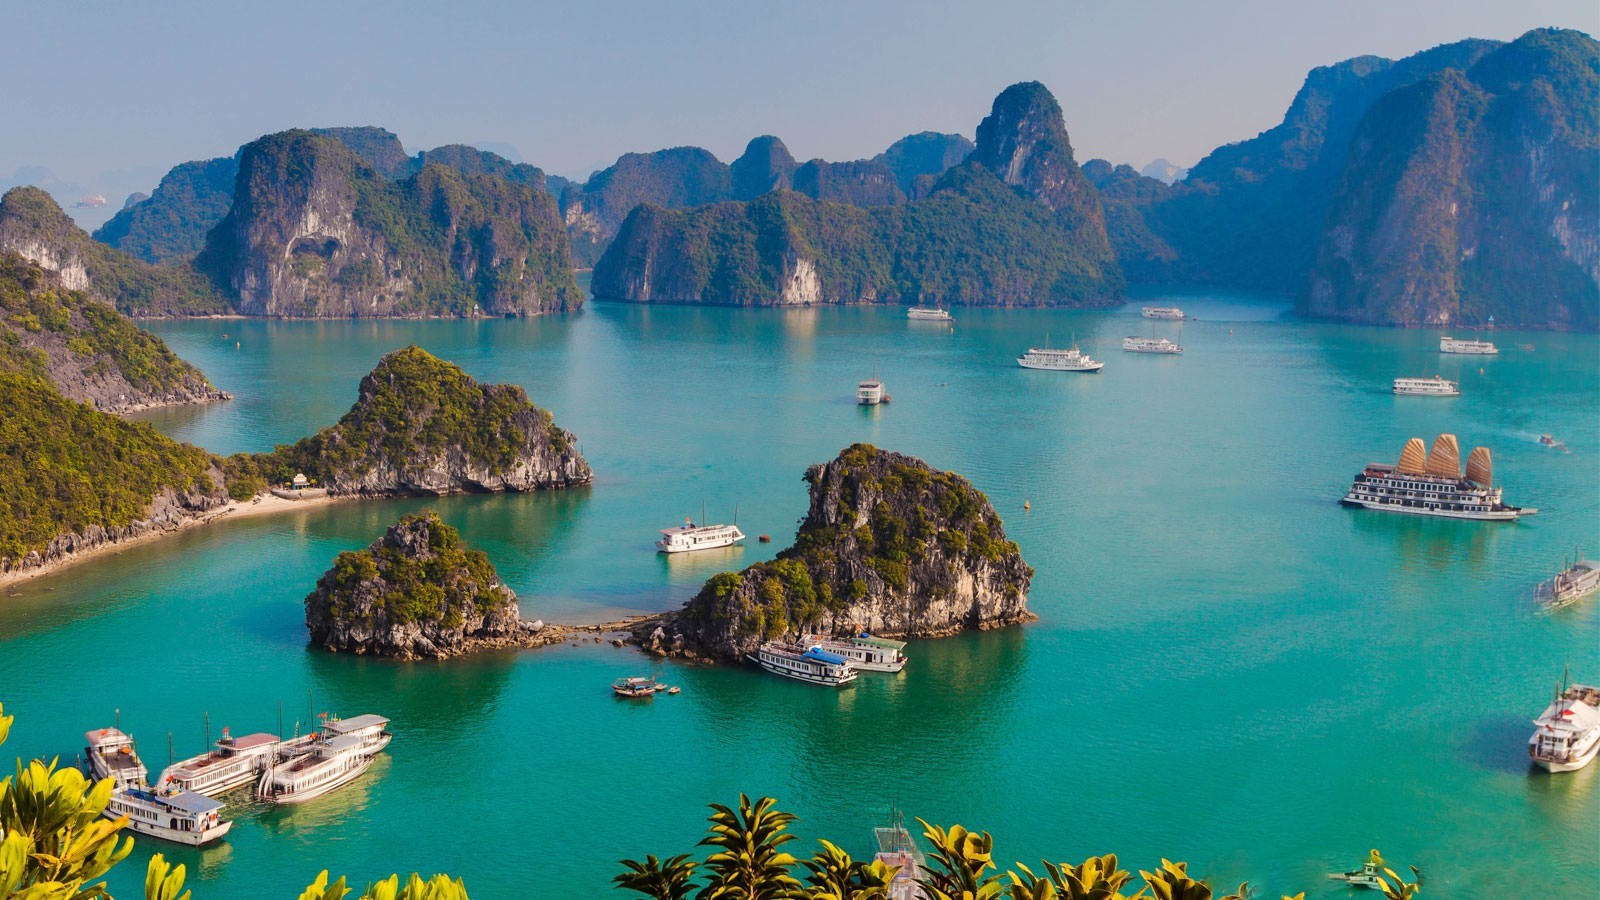 Đi hết Việt Nam với 10 bãi biển đẹp đến chẳng muốn về - 3